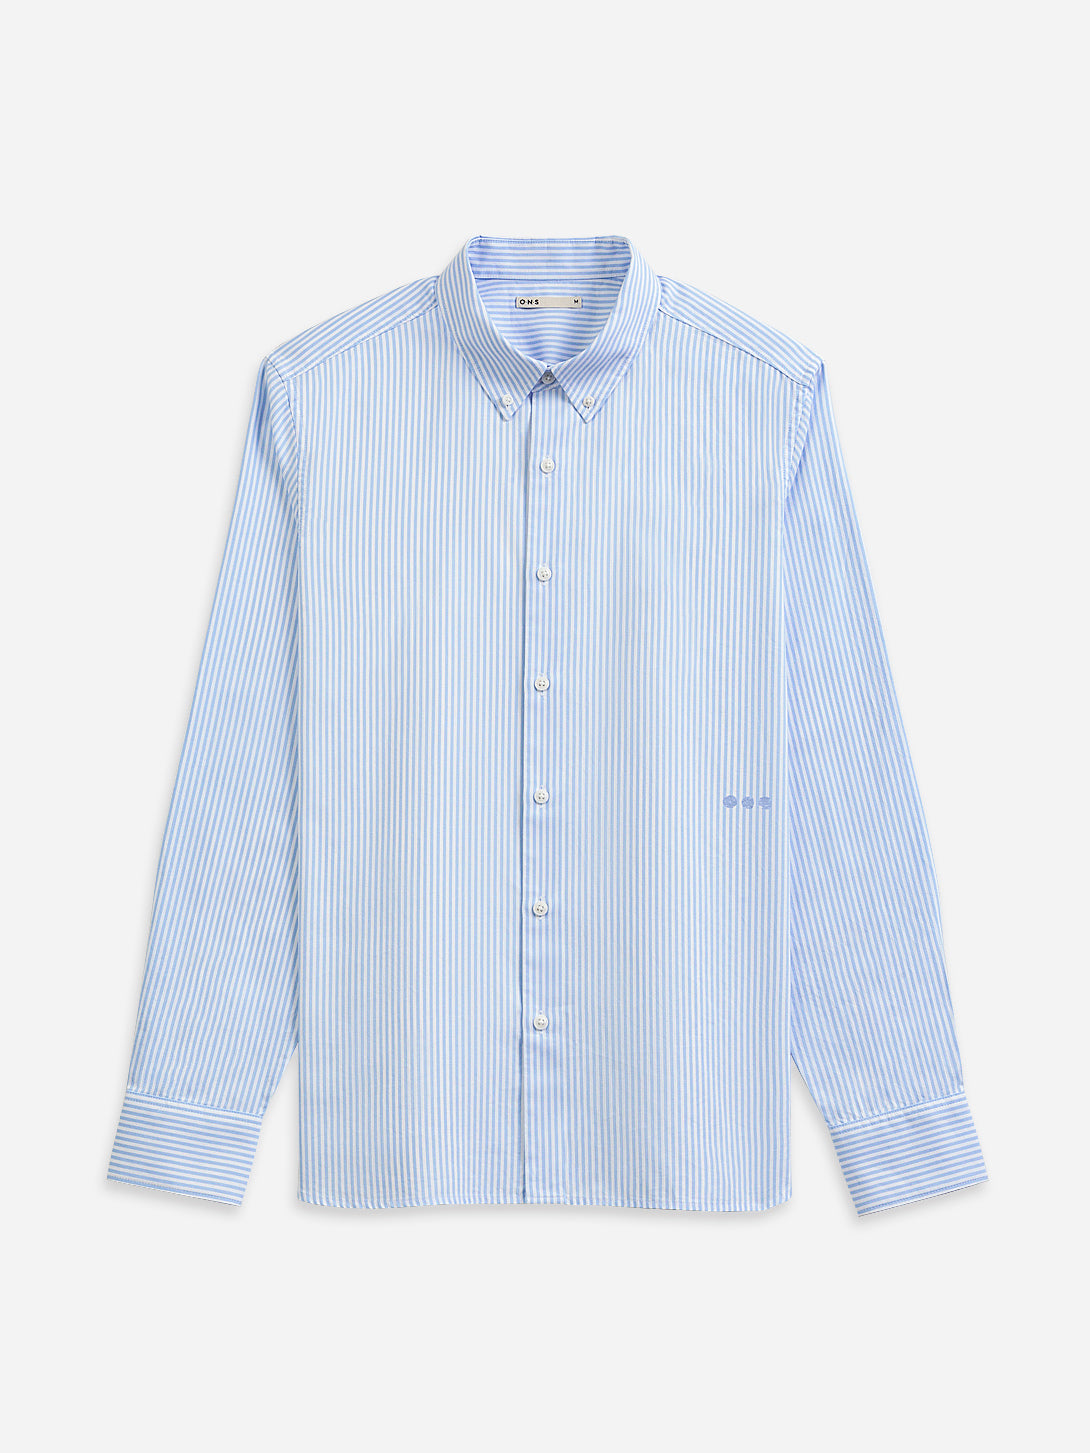 SKY BLUE/WHITE STRIPE Fulton Stripe Shirt Mens Button Down Logo